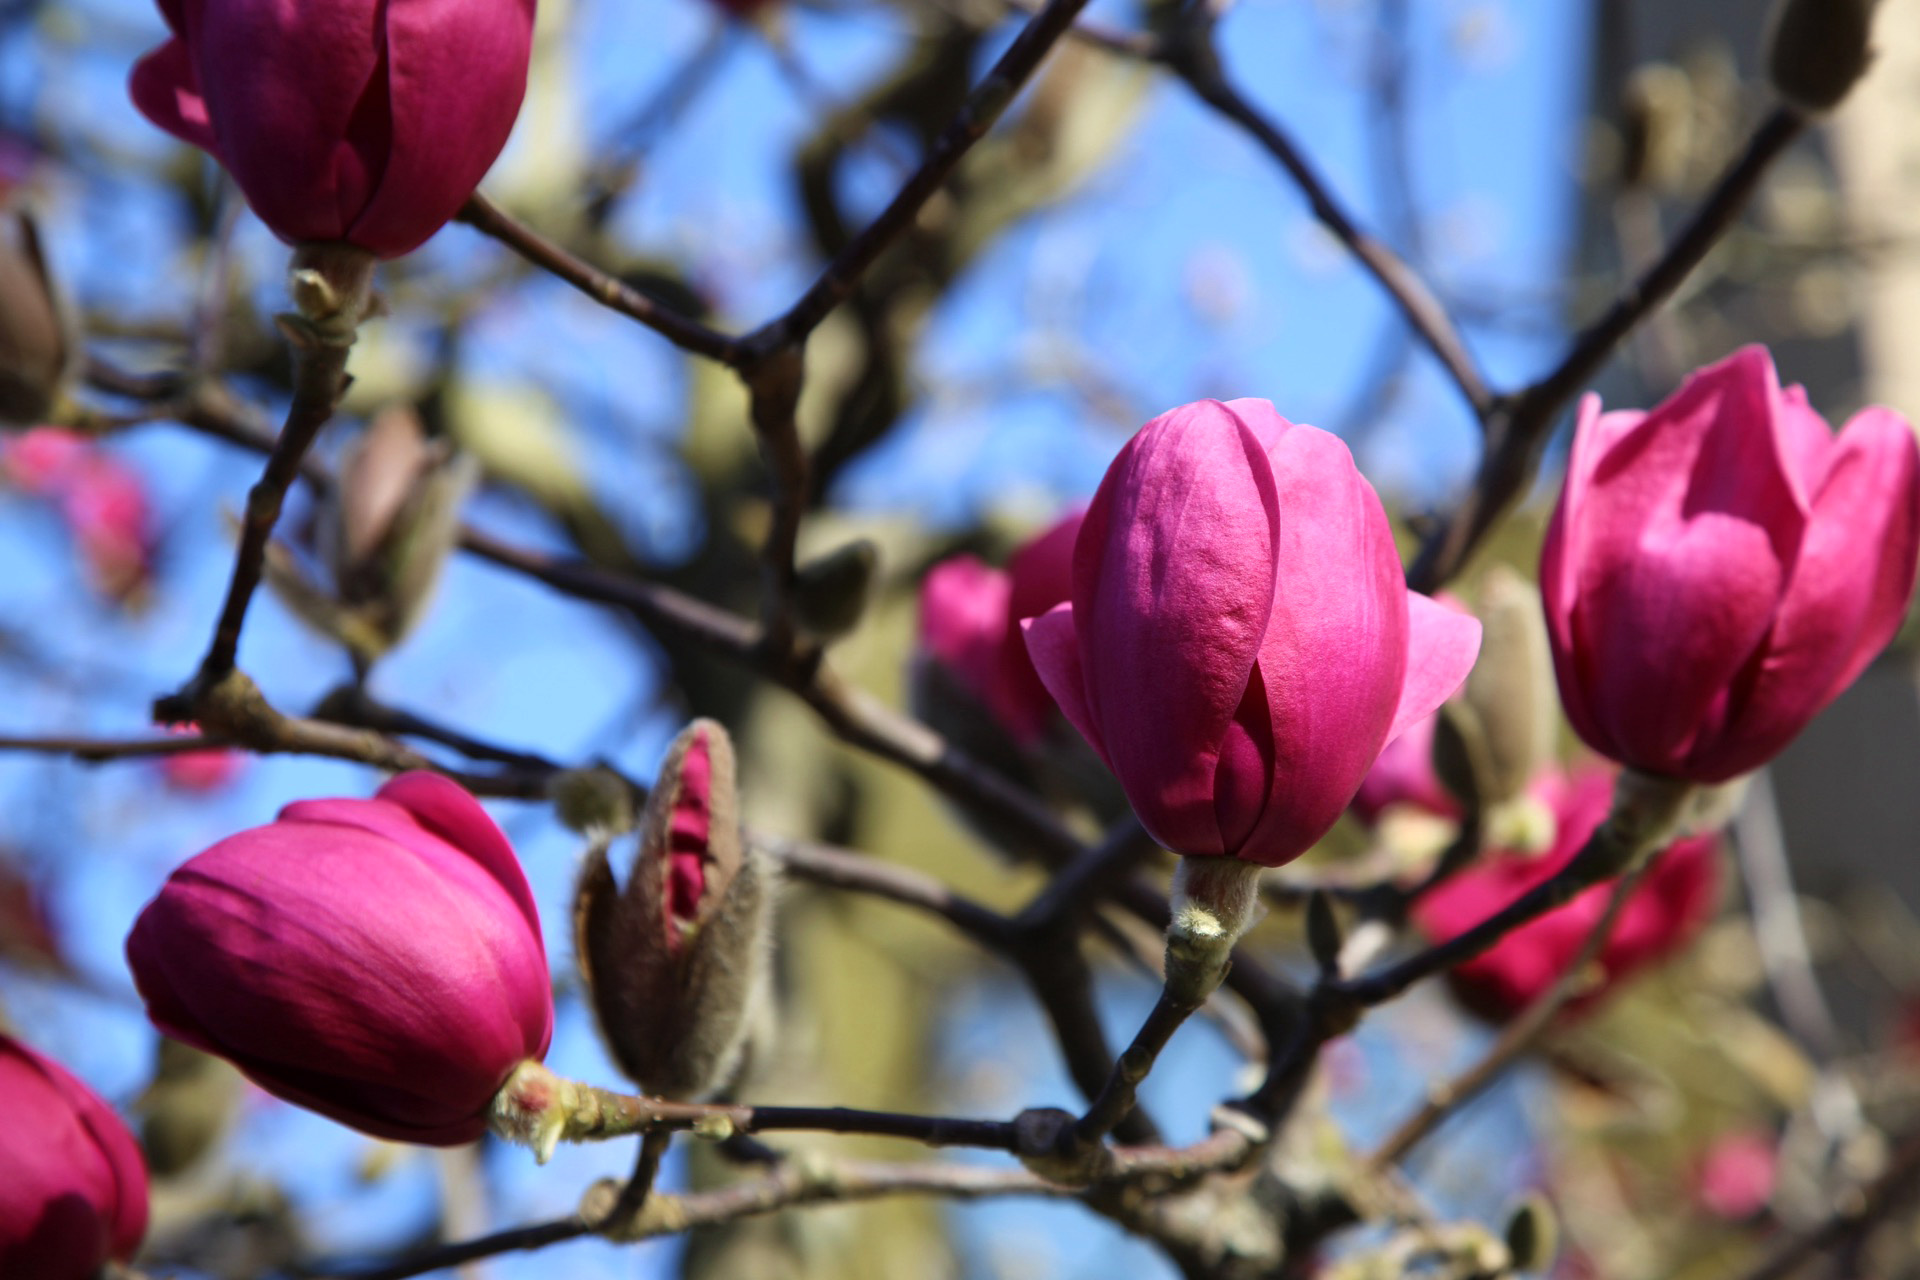 Scădere în greutate: când este un semn de alarmă? Scădere în greutate de magnolie